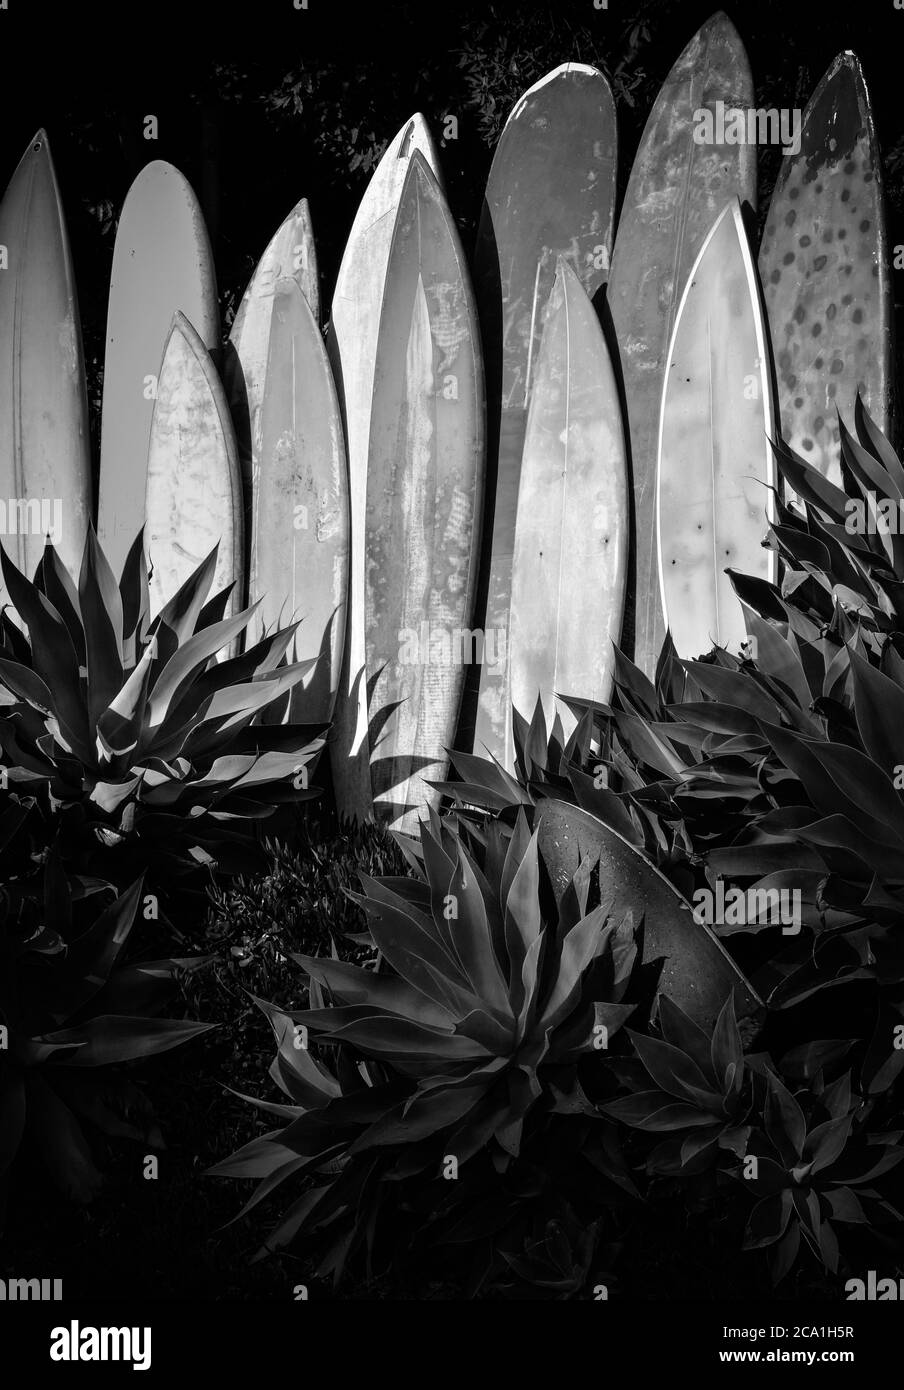 Une gamme verticale de planches de surf anciennes, gungy et anciennes dans un jardin agave en Californie du Sud en noir et blanc Banque D'Images